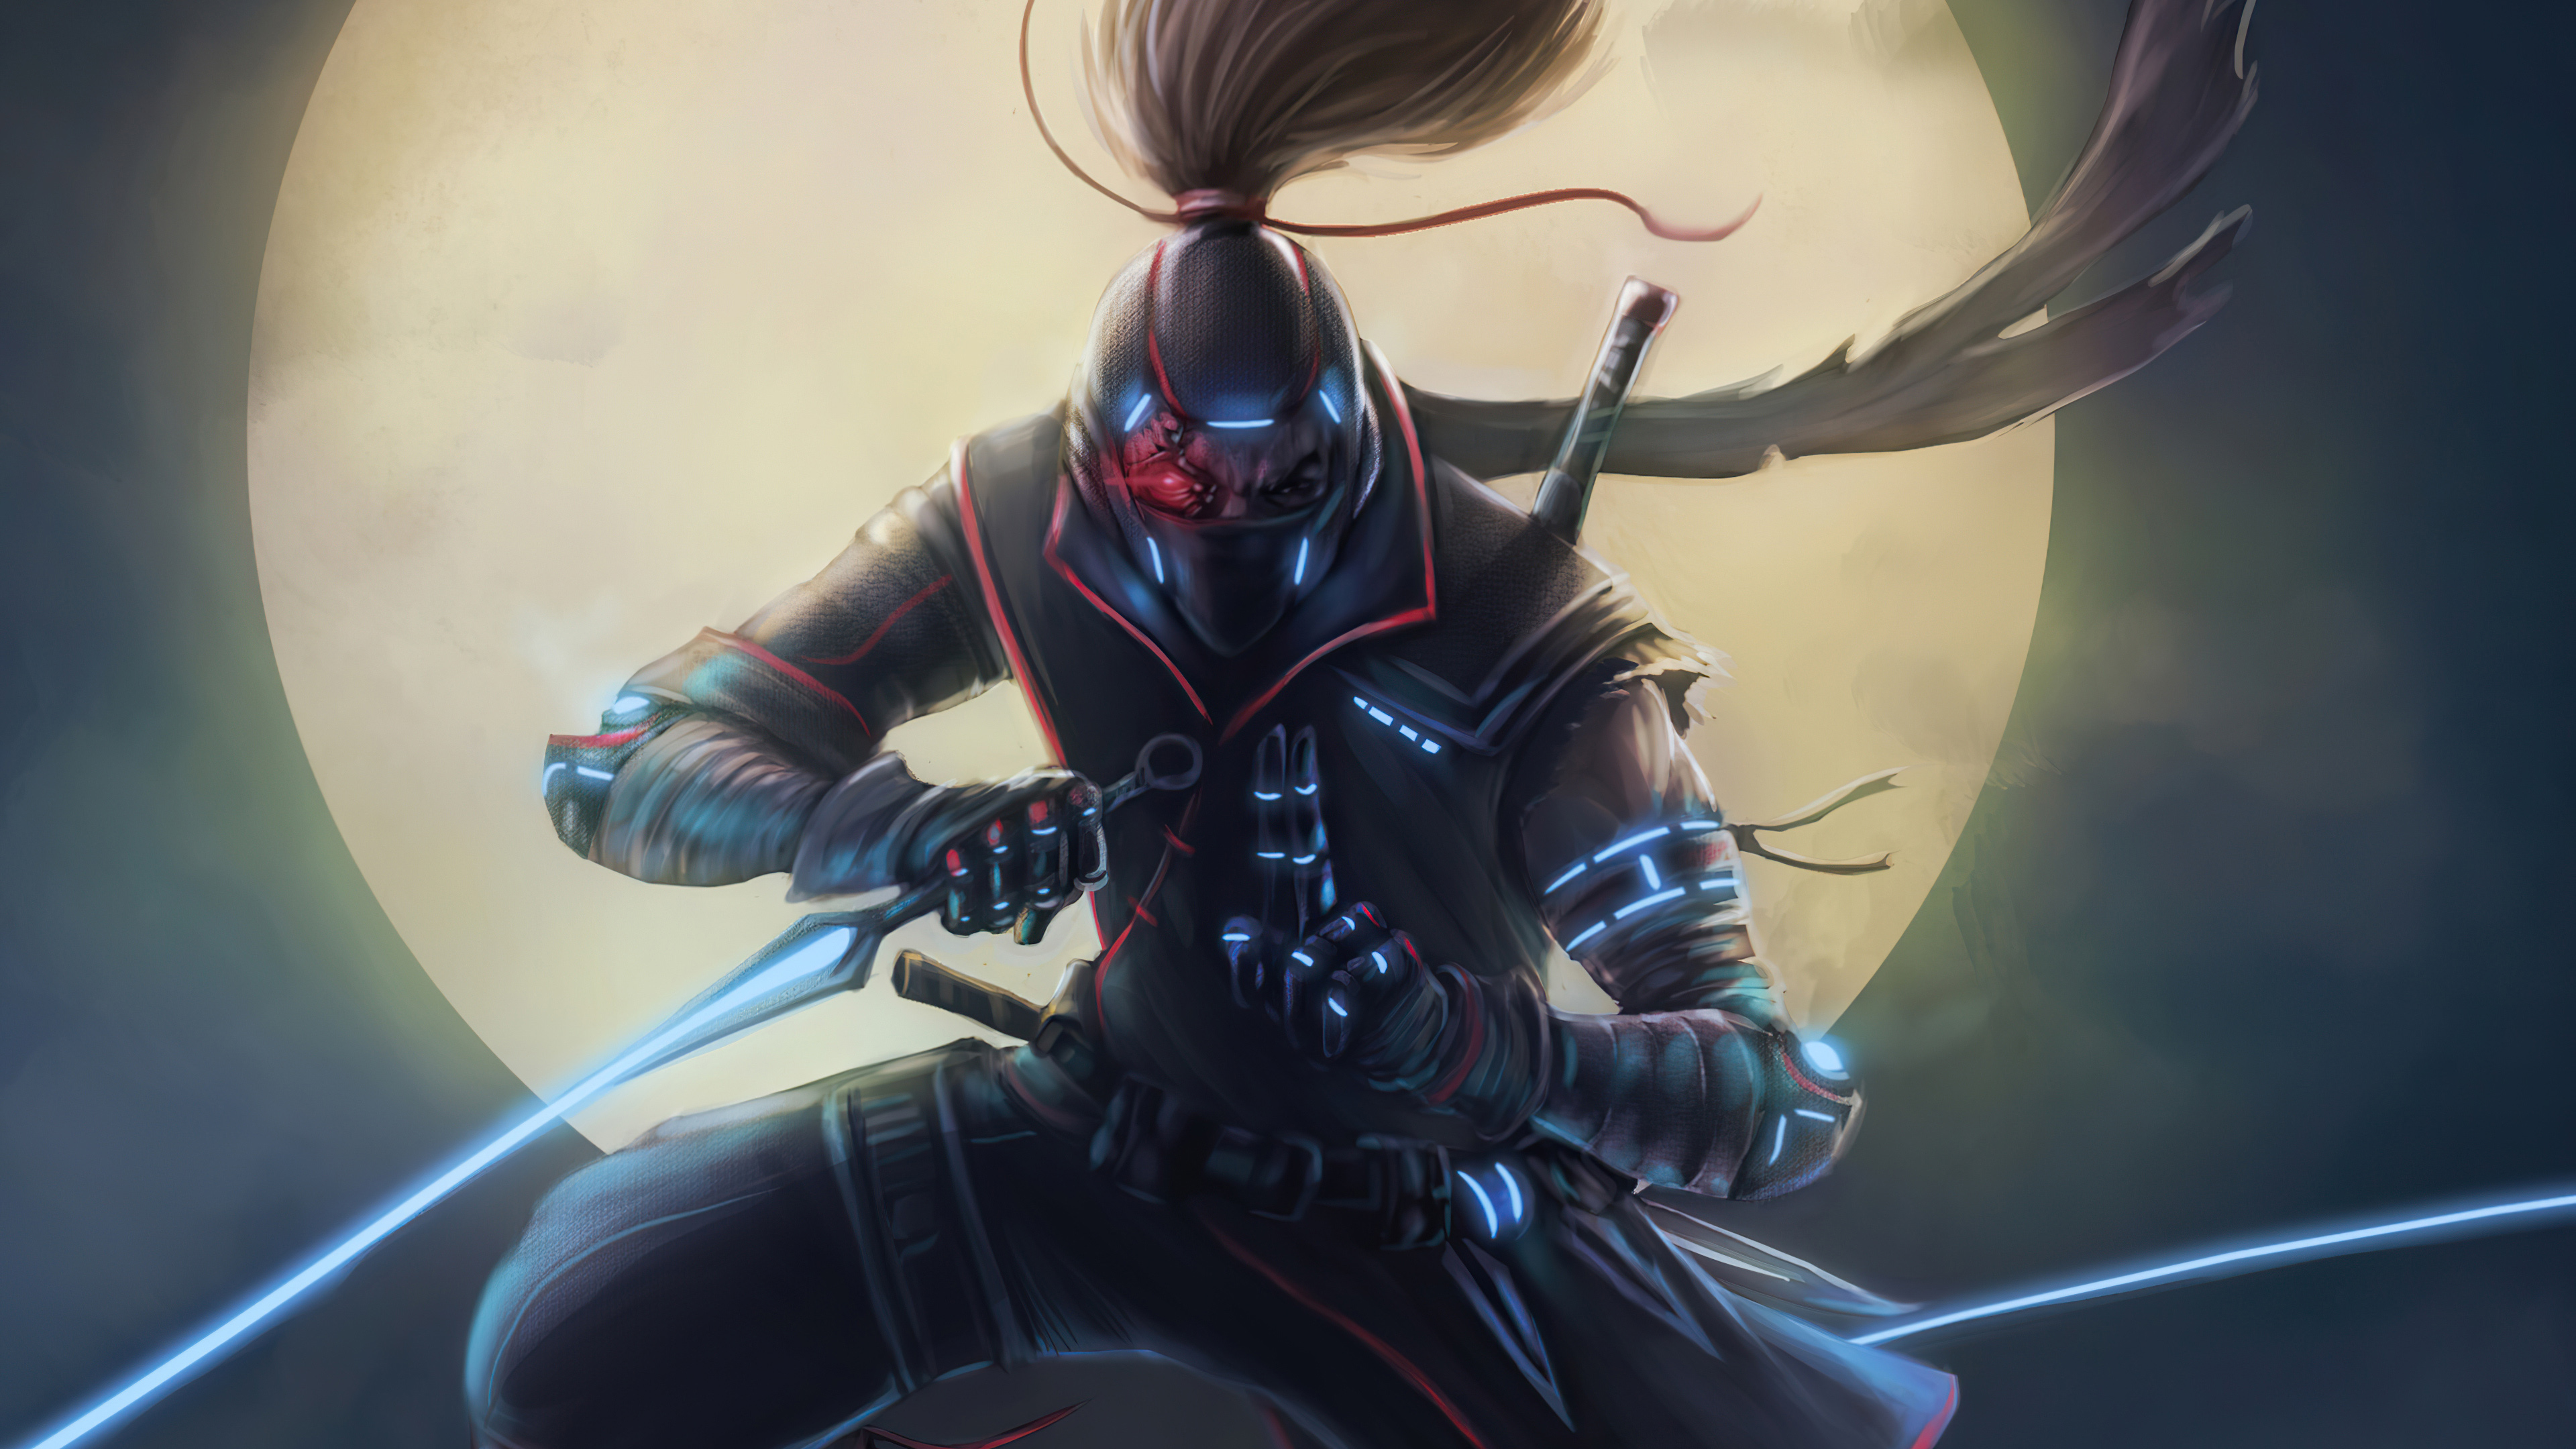 Cyberpunk Ninja Warrior 4K HD